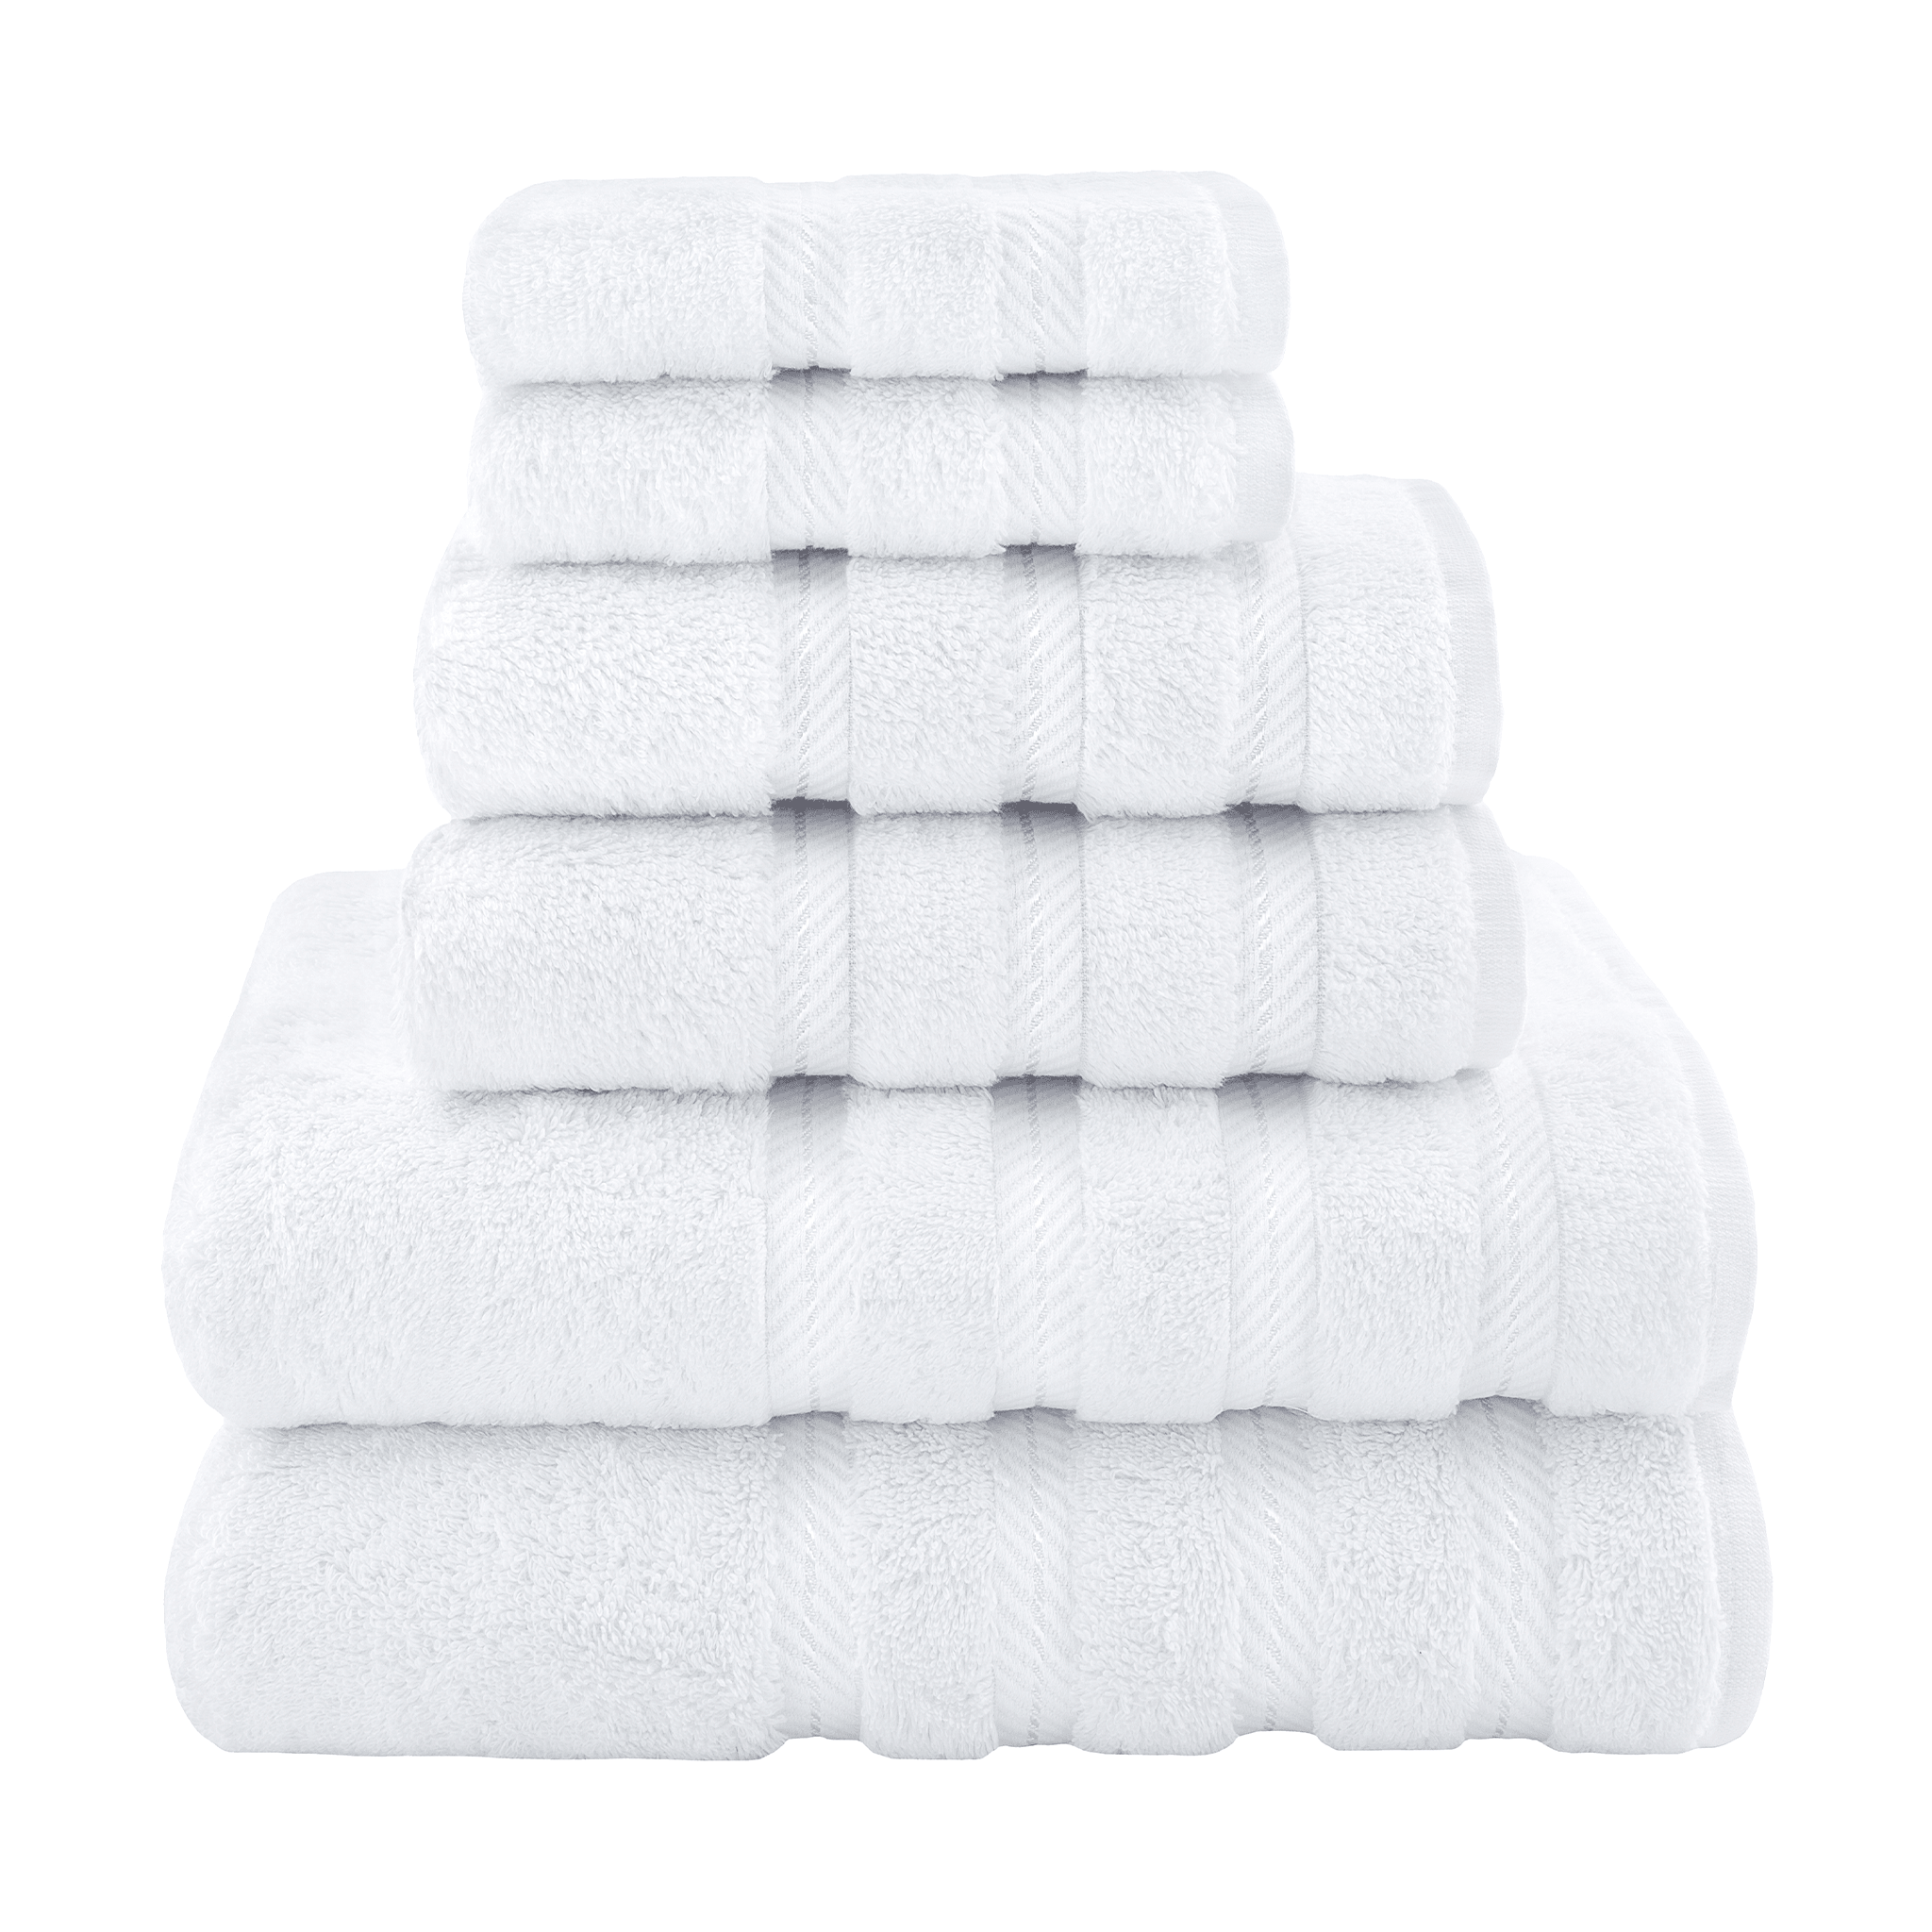 Linen Bath Towel Set / White Thick Linen Towels / Linen Bath and Hand/face  Towels / Rustic Linen Towels / Washed Bath Linen Towels / Towels 